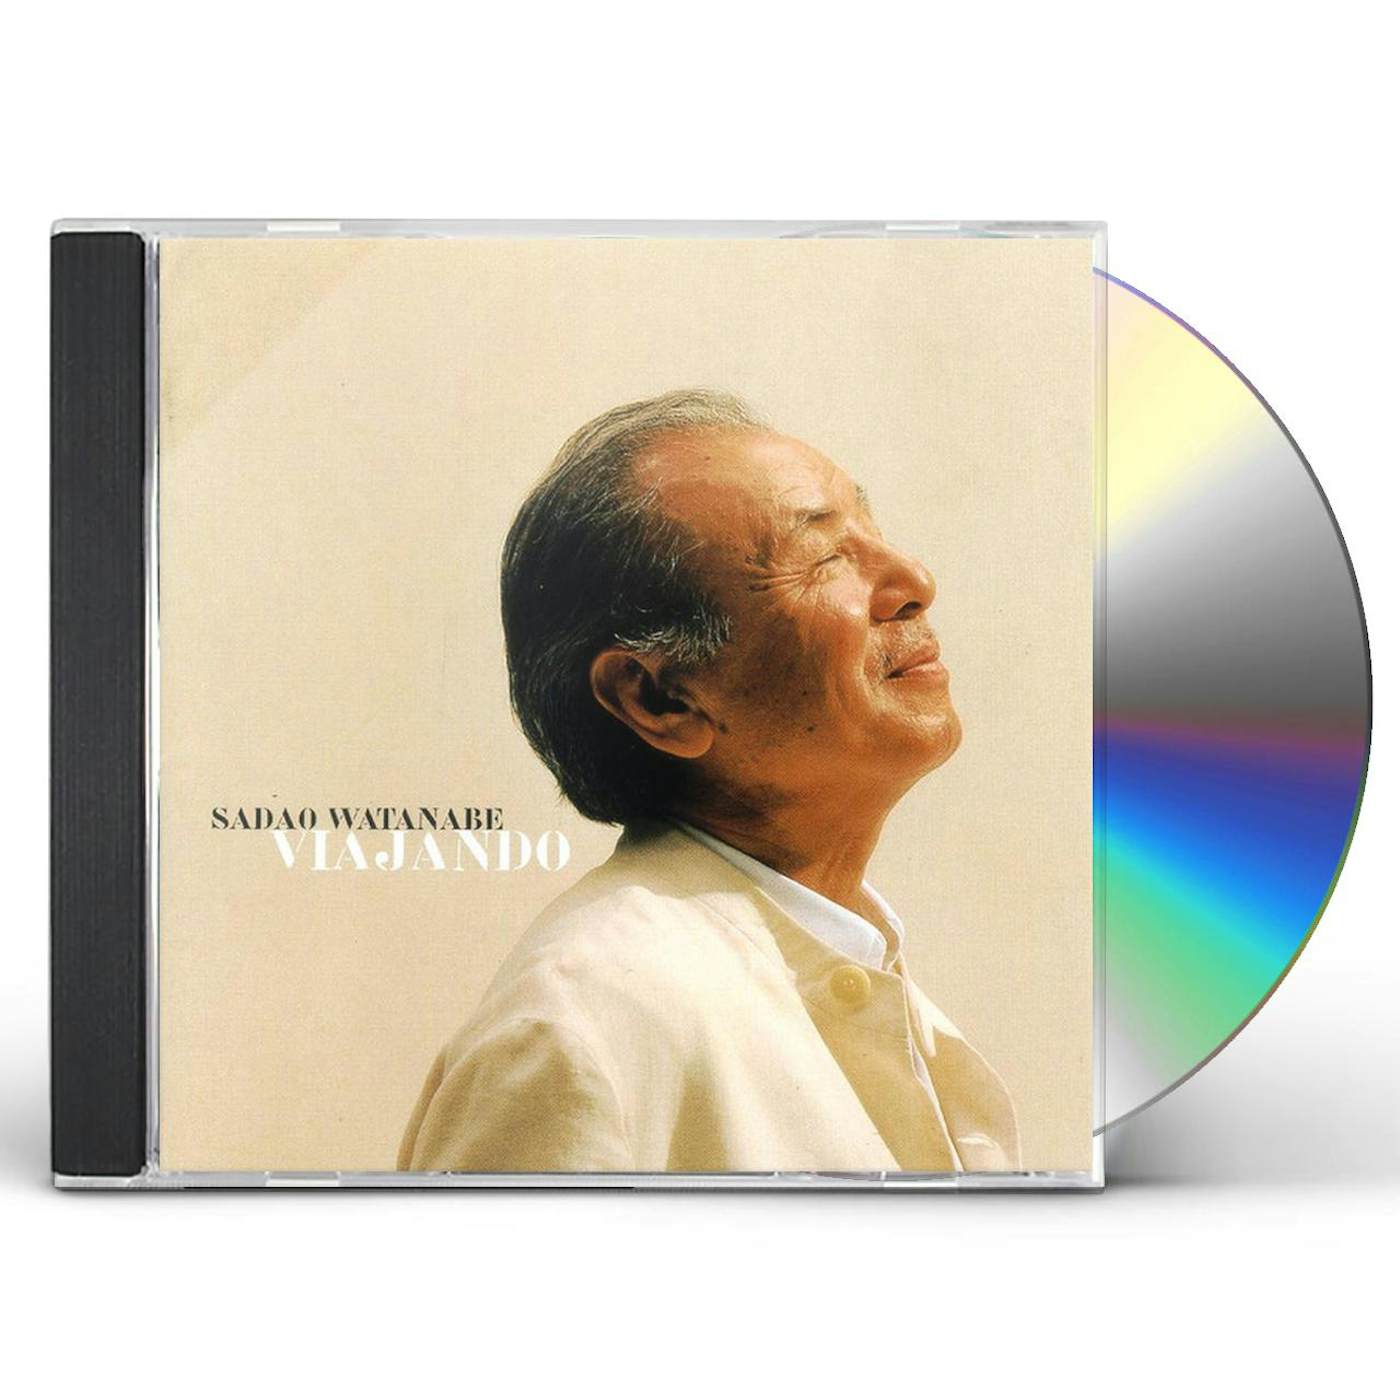 Sadao Watanabe VIAJANDO CD